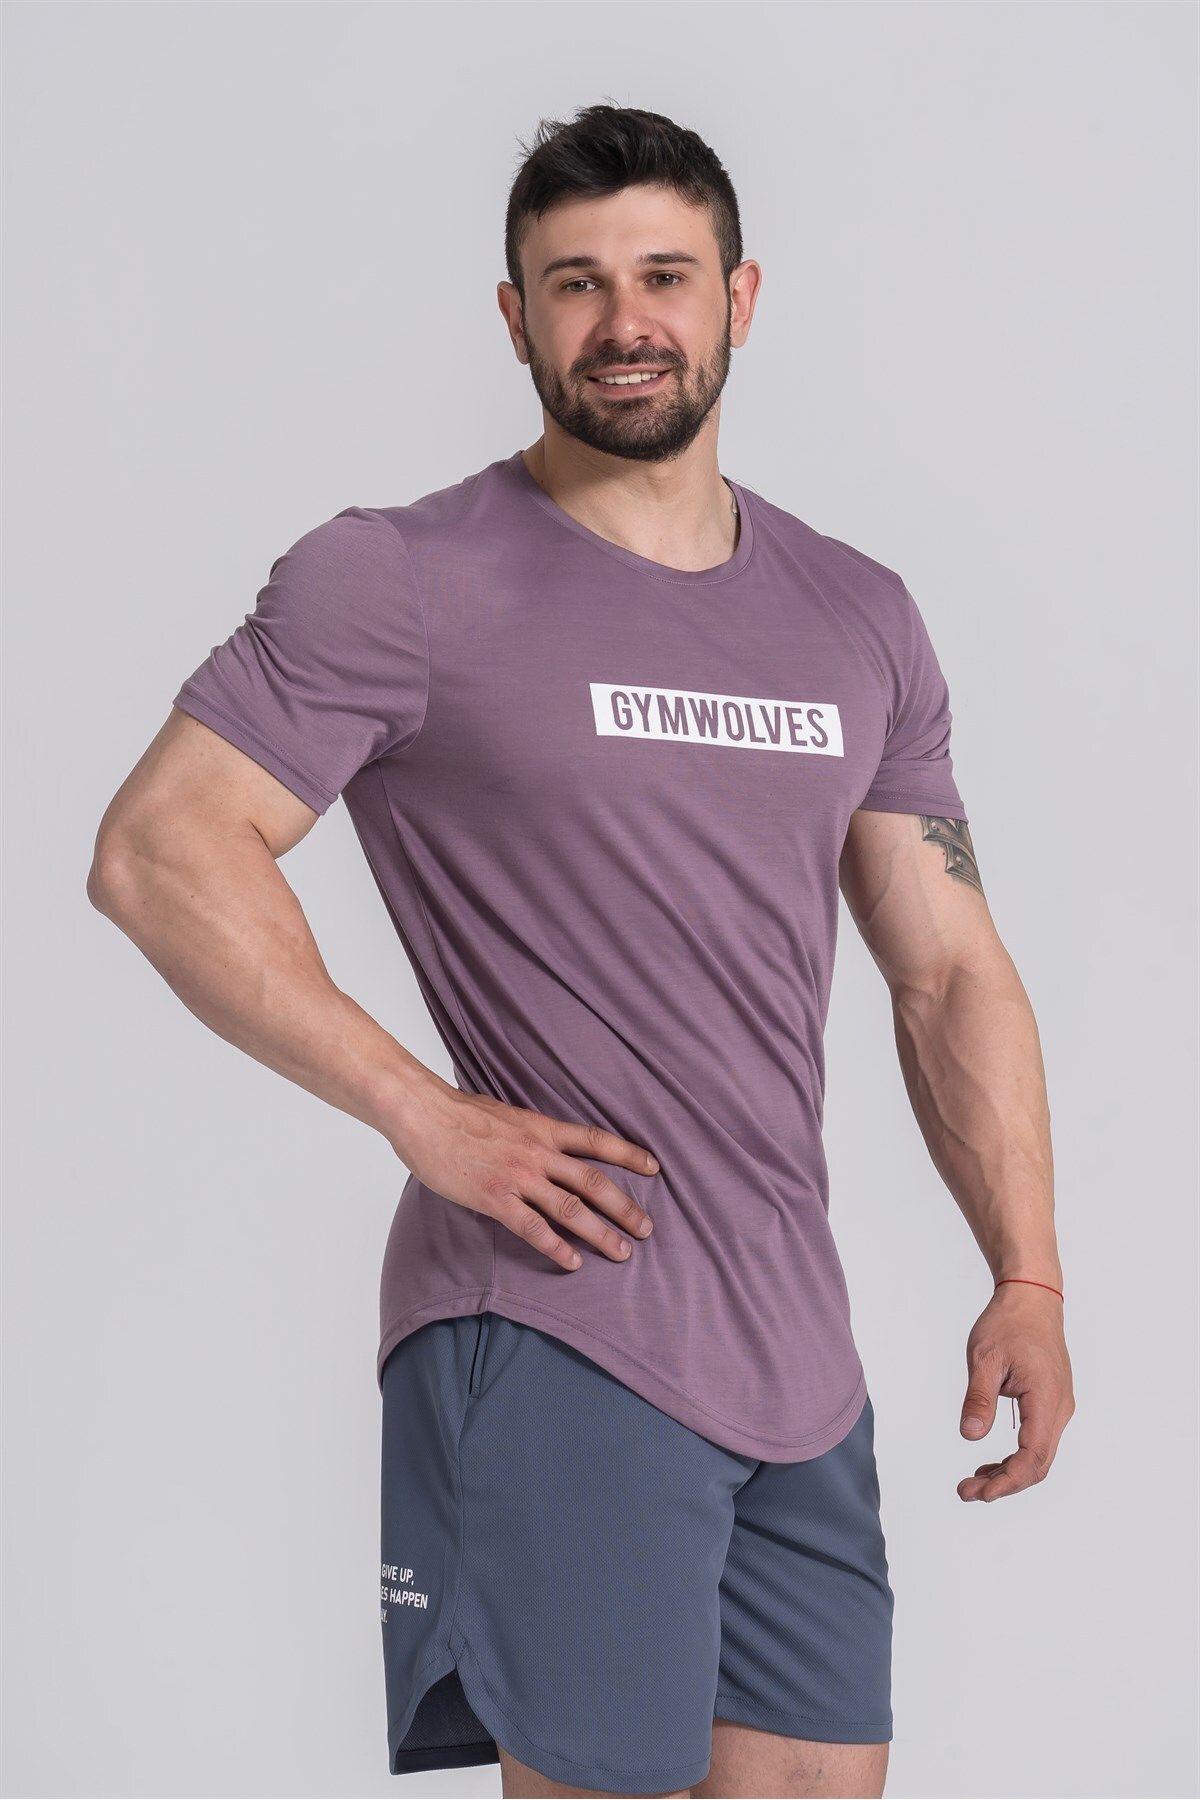 Gymwolves Erkek Spor T-shirt | Mor | Workout T-shirt |